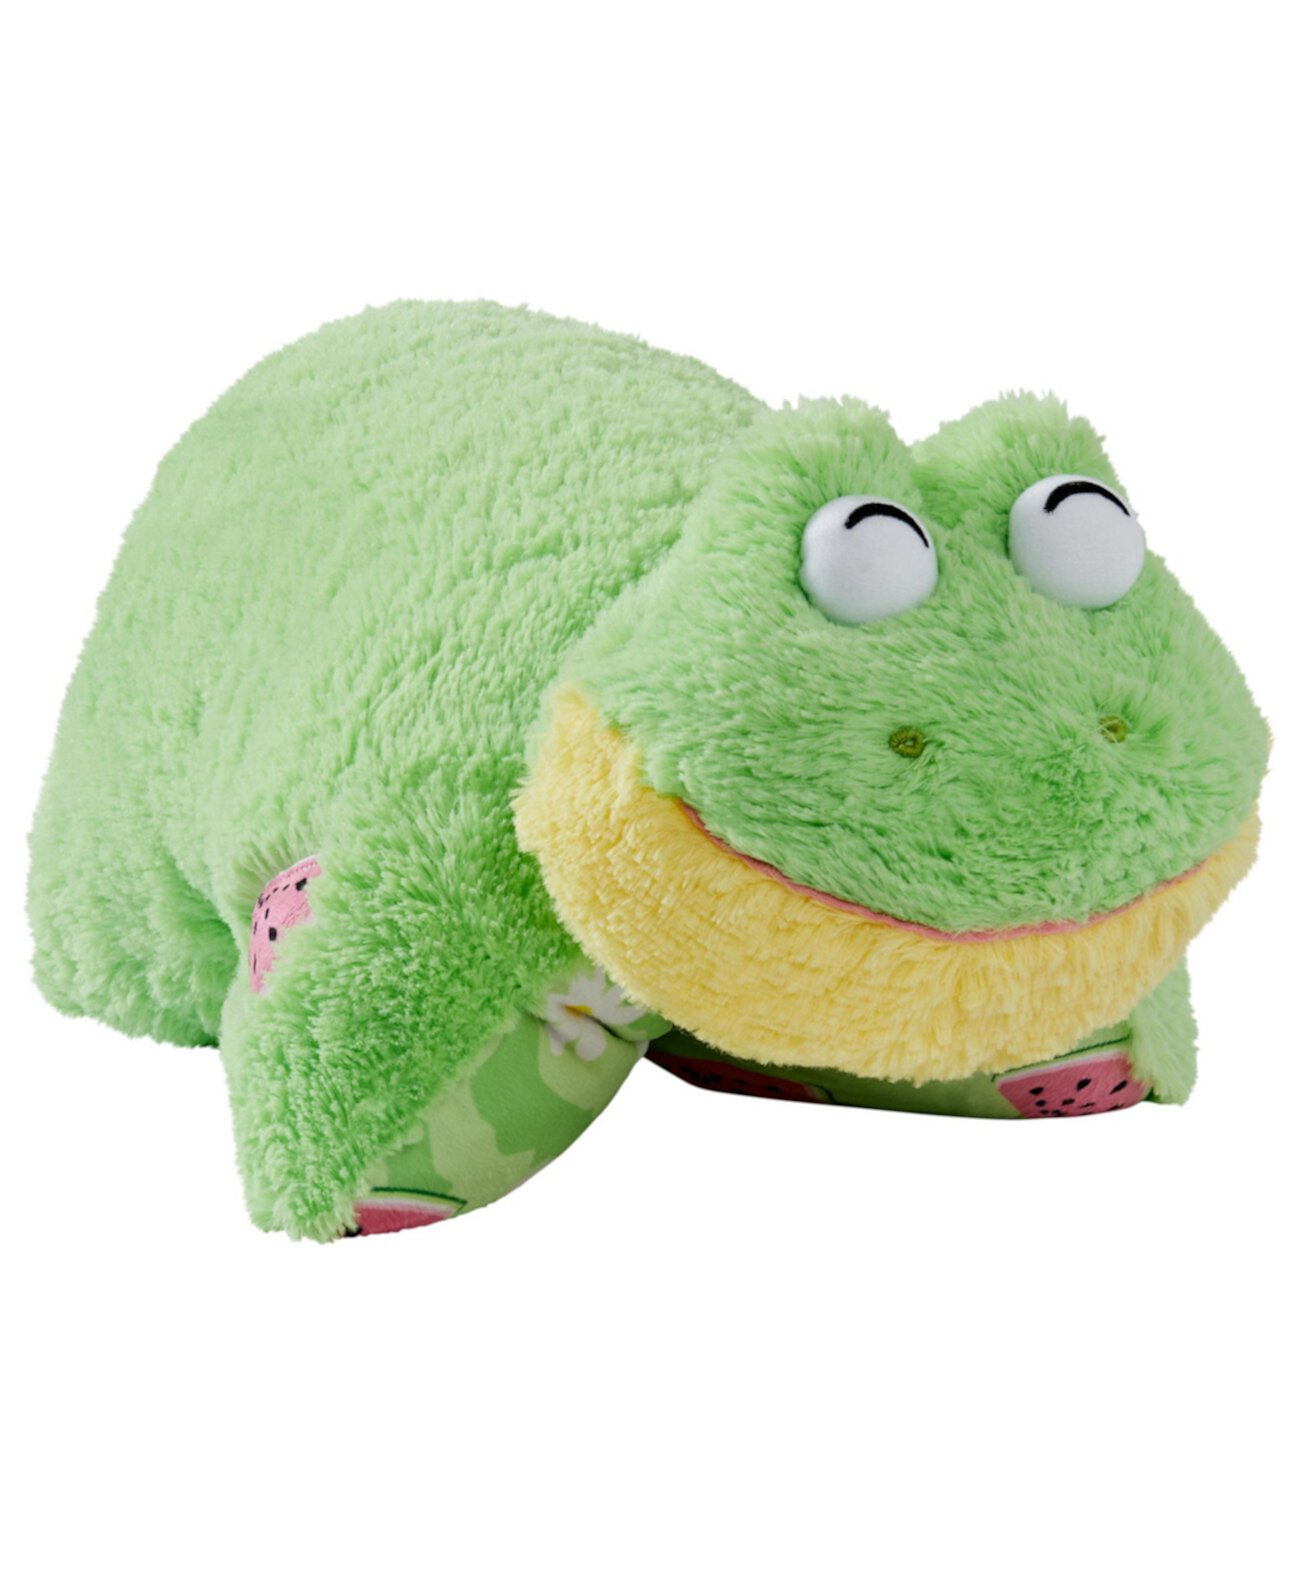 Сладкая ароматизированная арбузная лягушка плюшевая игрушка Pillow Pets